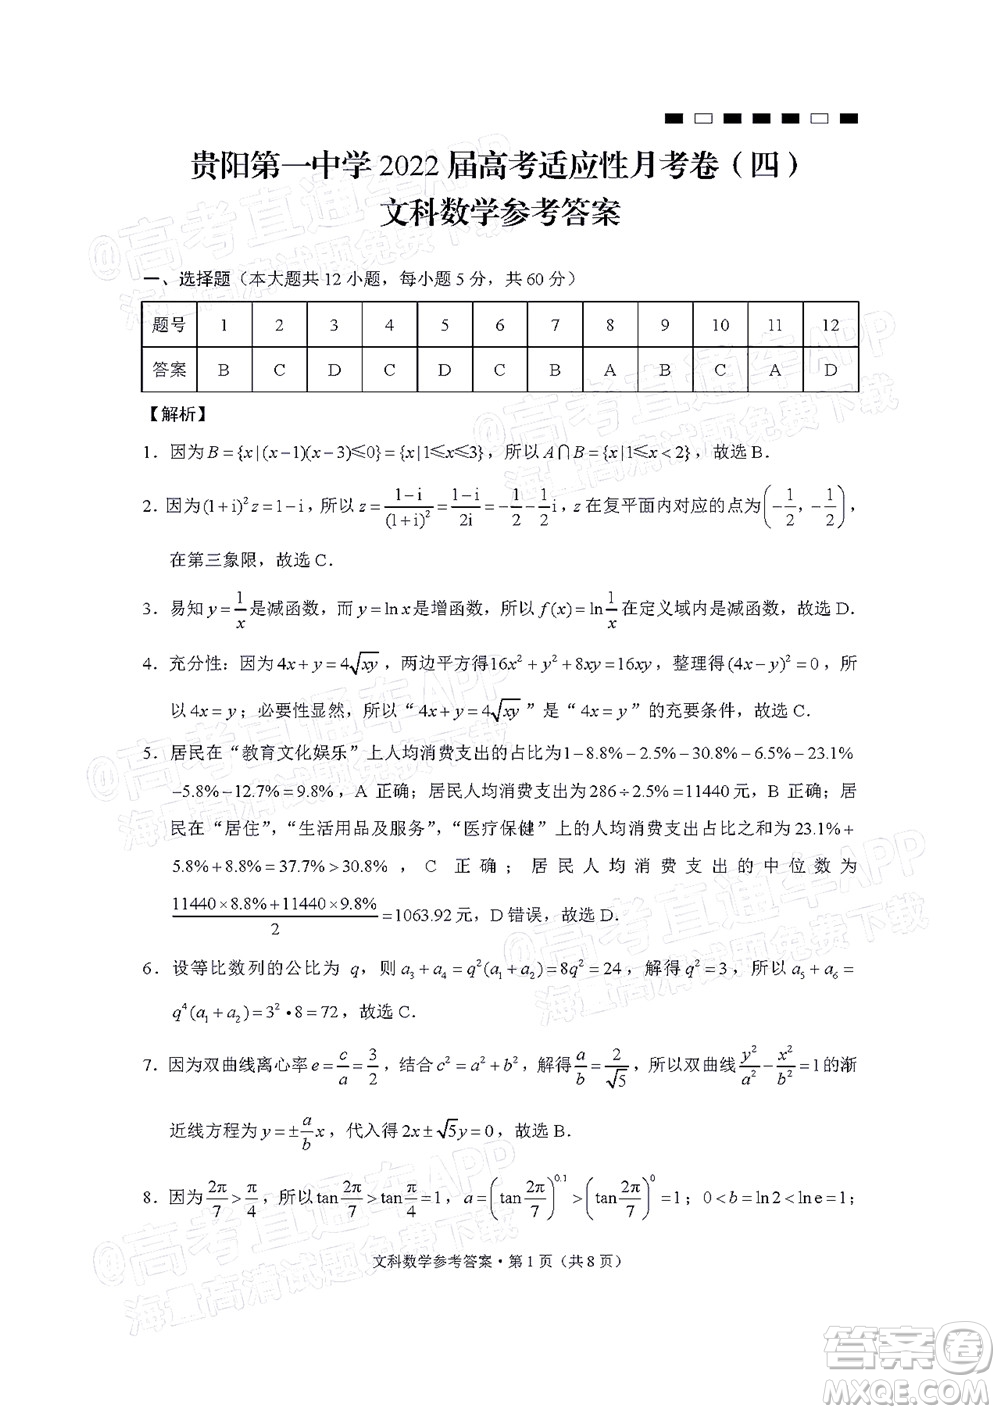 贵阳第一中学2022届高考适应性月考卷四文科数学试题及答案